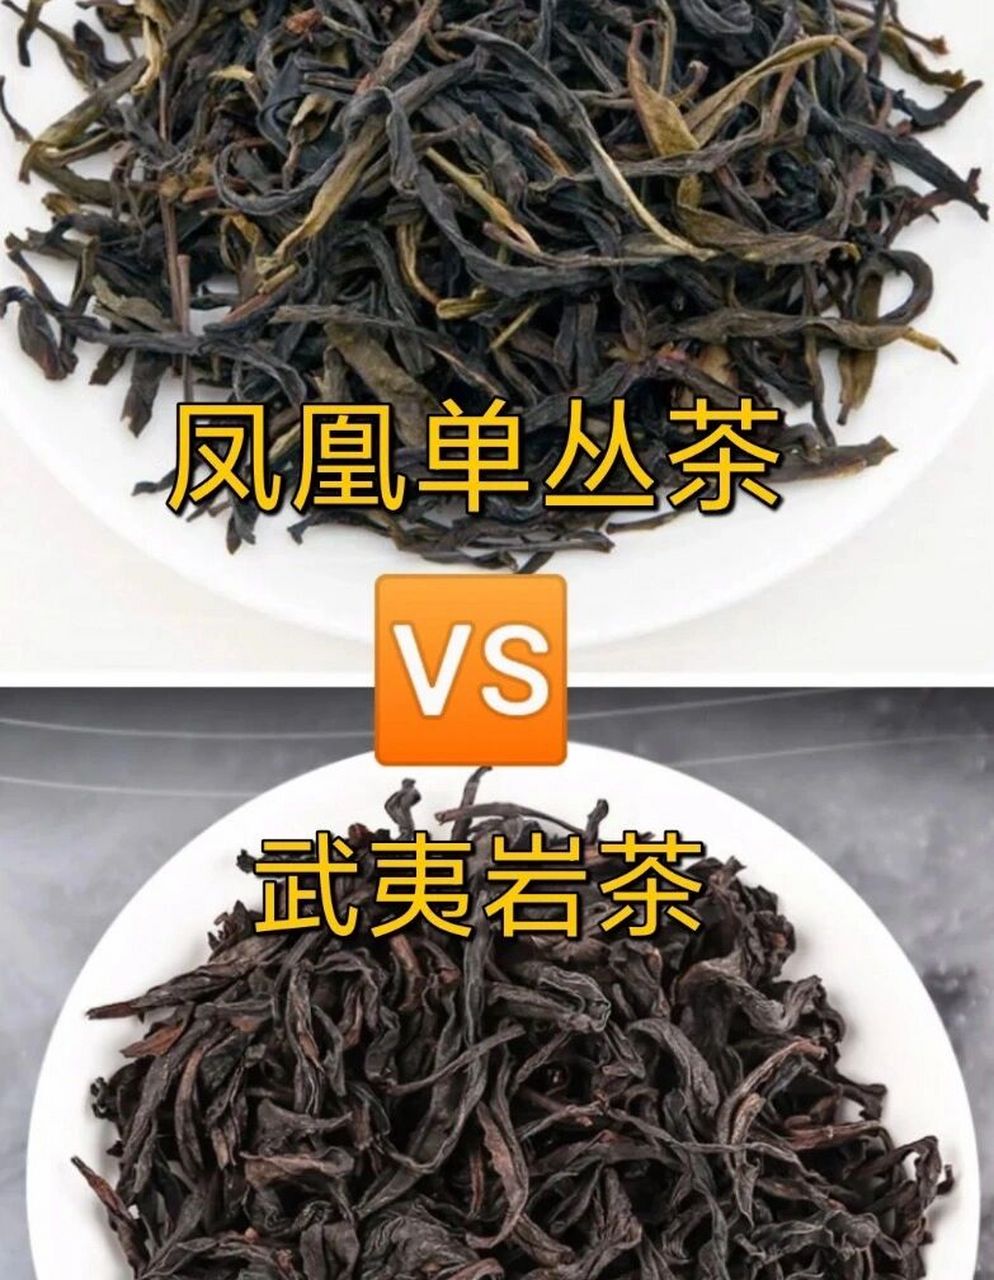 凤凰单丛是茶树品种名,也是茶名;而武夷岩茶是福建北部地区多种青茶的